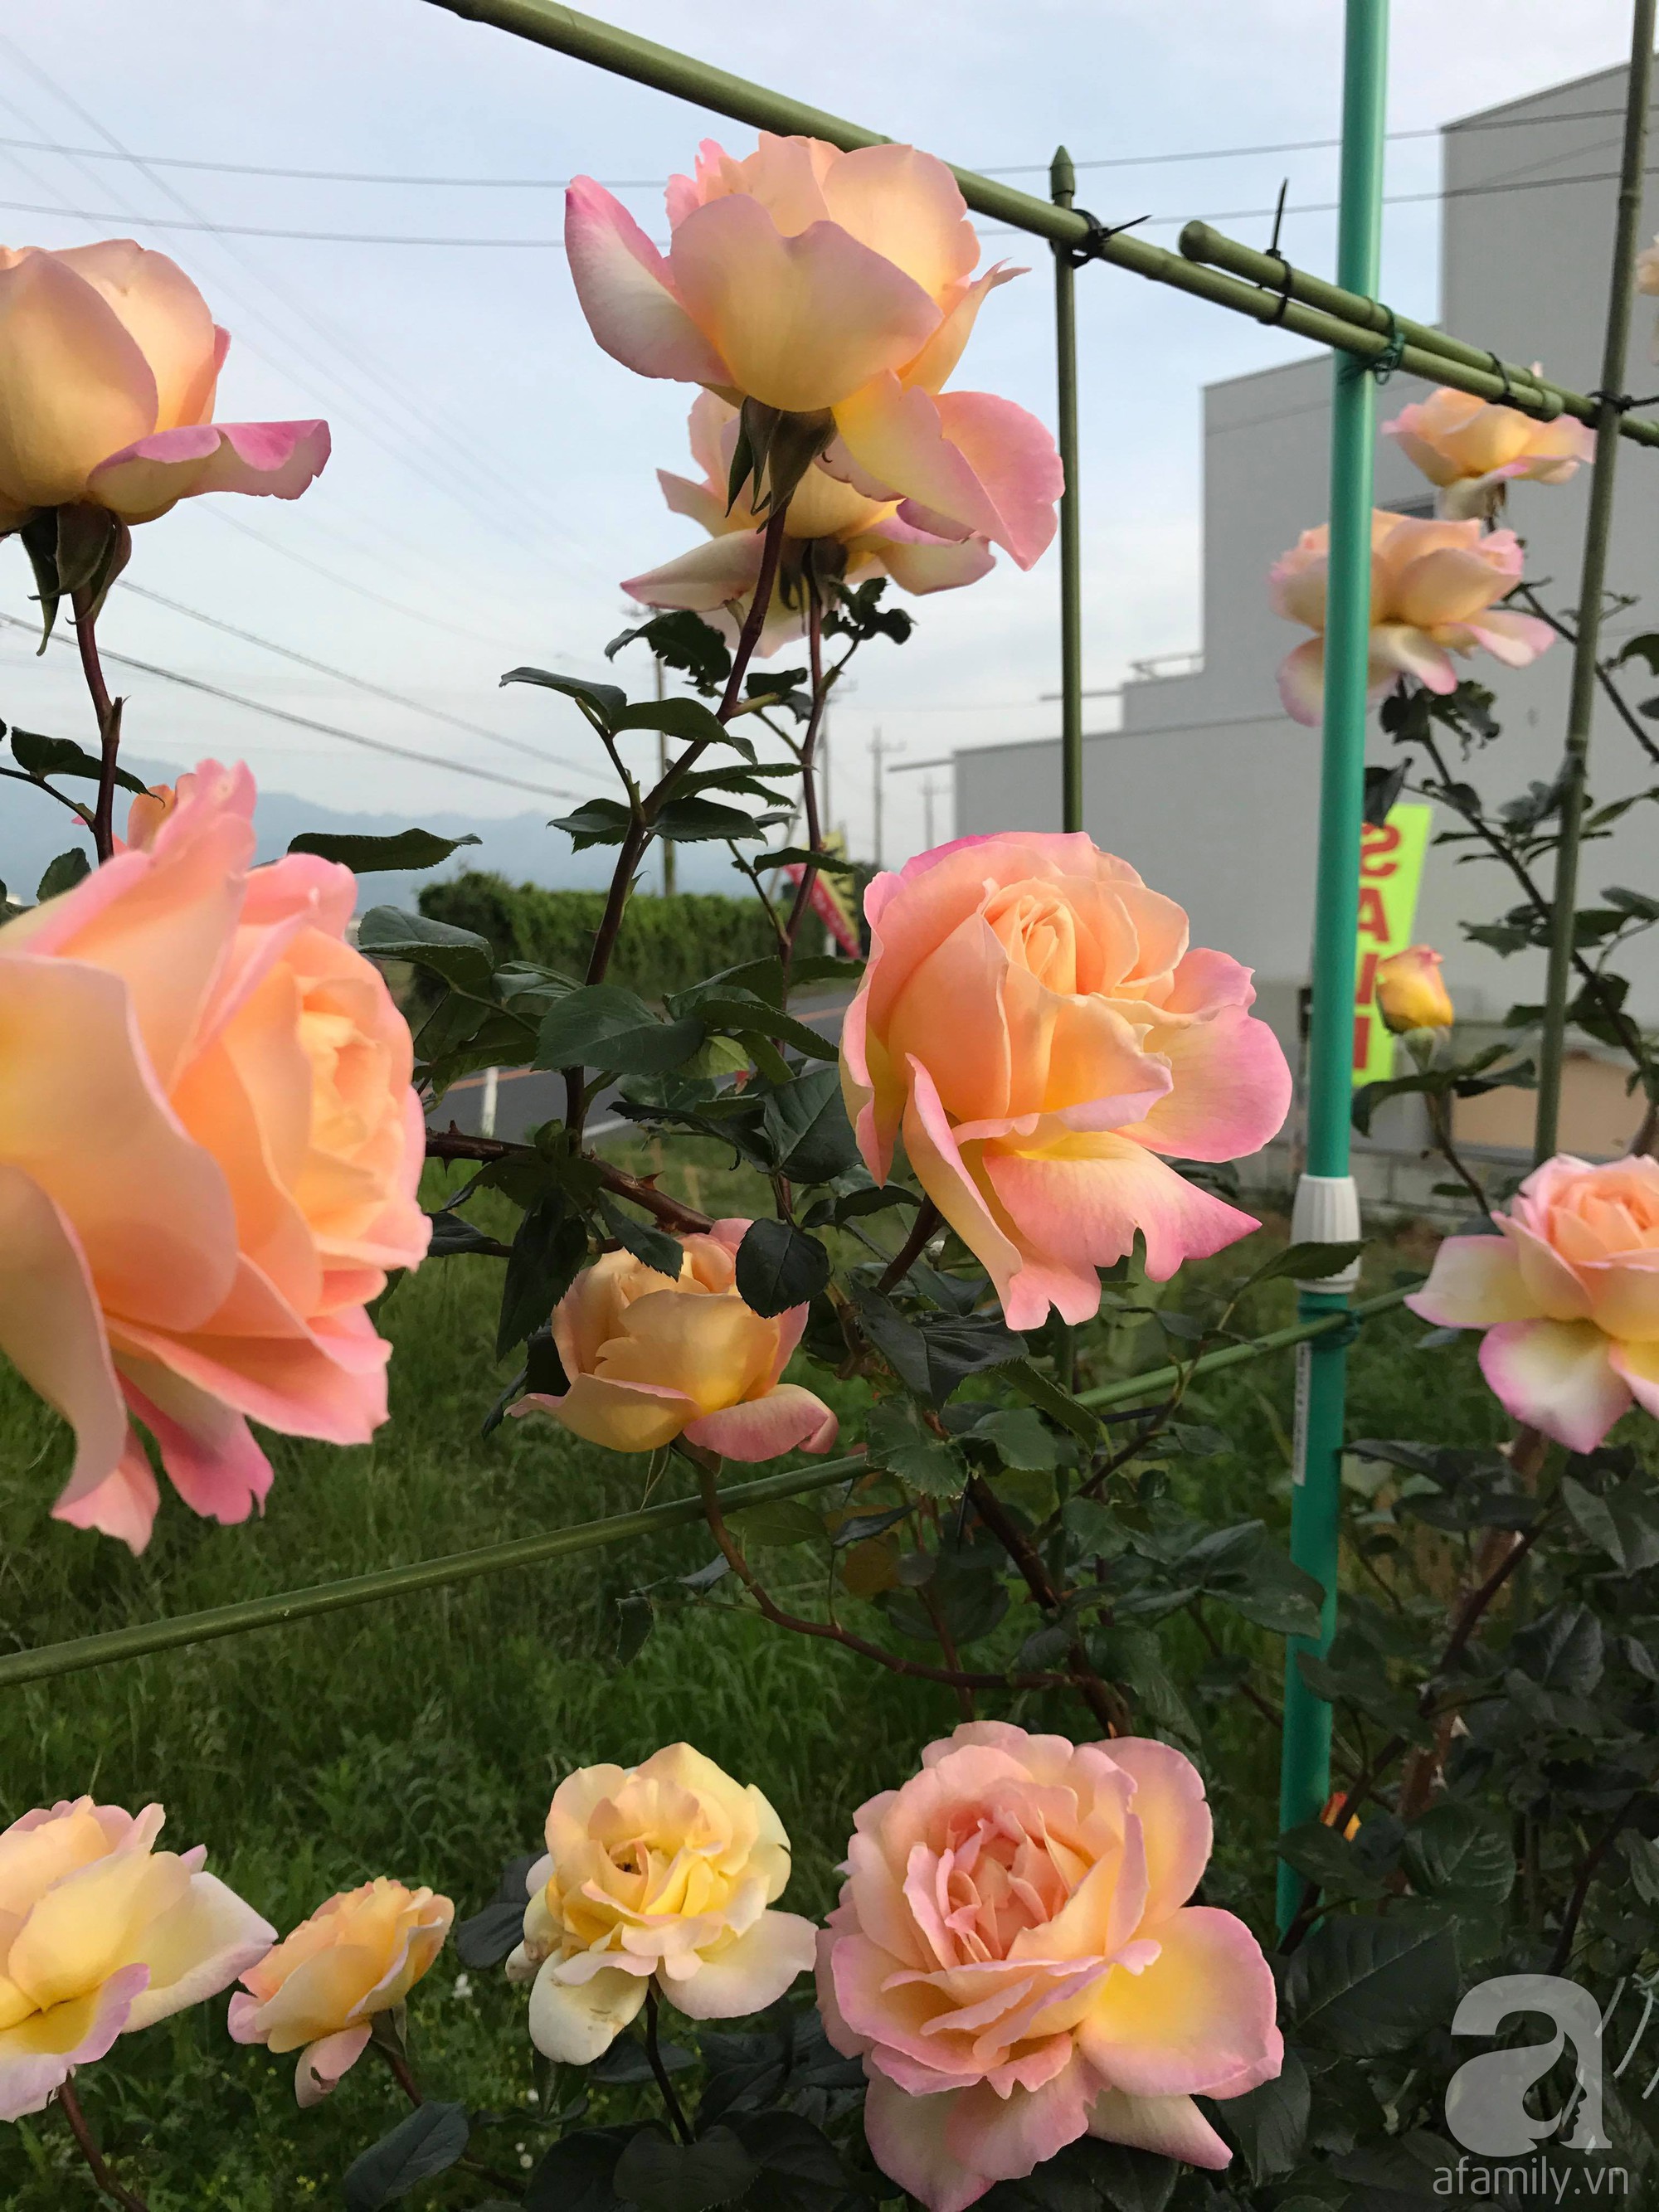 Bức tường hoa hồng đẹp như mơ trong sân vườn vỏn vẹn 6m² của người phụ nữ bỏ ra 5 năm miệt mài chăm sóc - Ảnh 15.